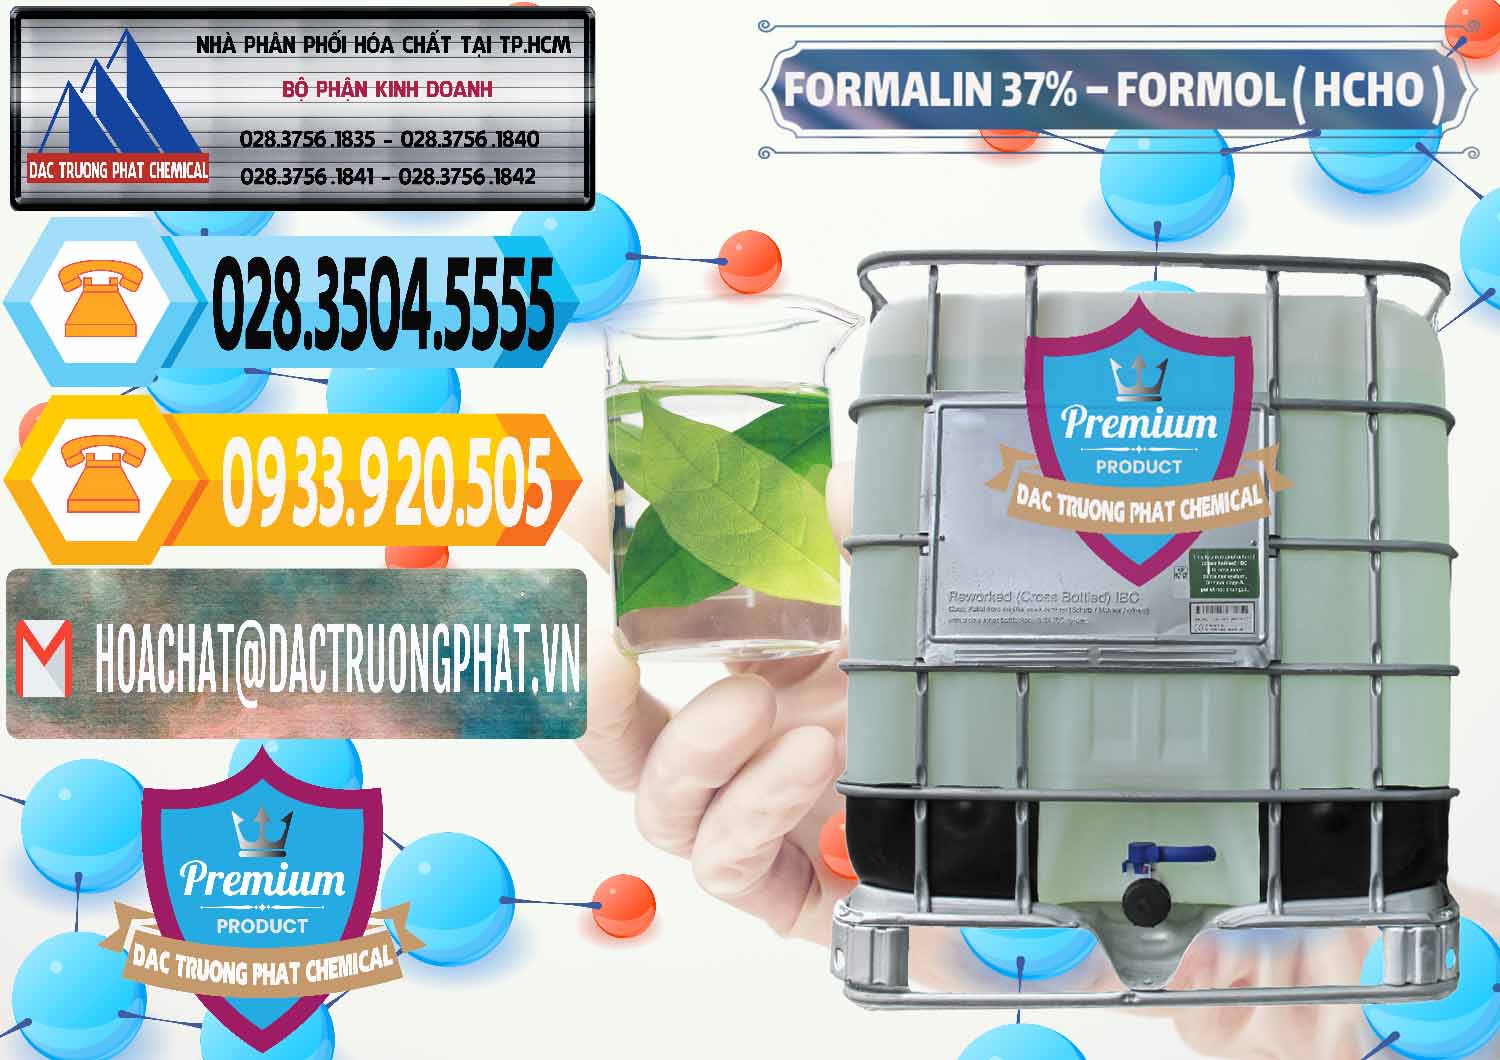 Cty phân phối _ cung cấp Formalin - Formol ( HCHO ) 37% Việt Nam - 0187 - Đơn vị chuyên cung cấp & kinh doanh hóa chất tại TP.HCM - hoachattayrua.net